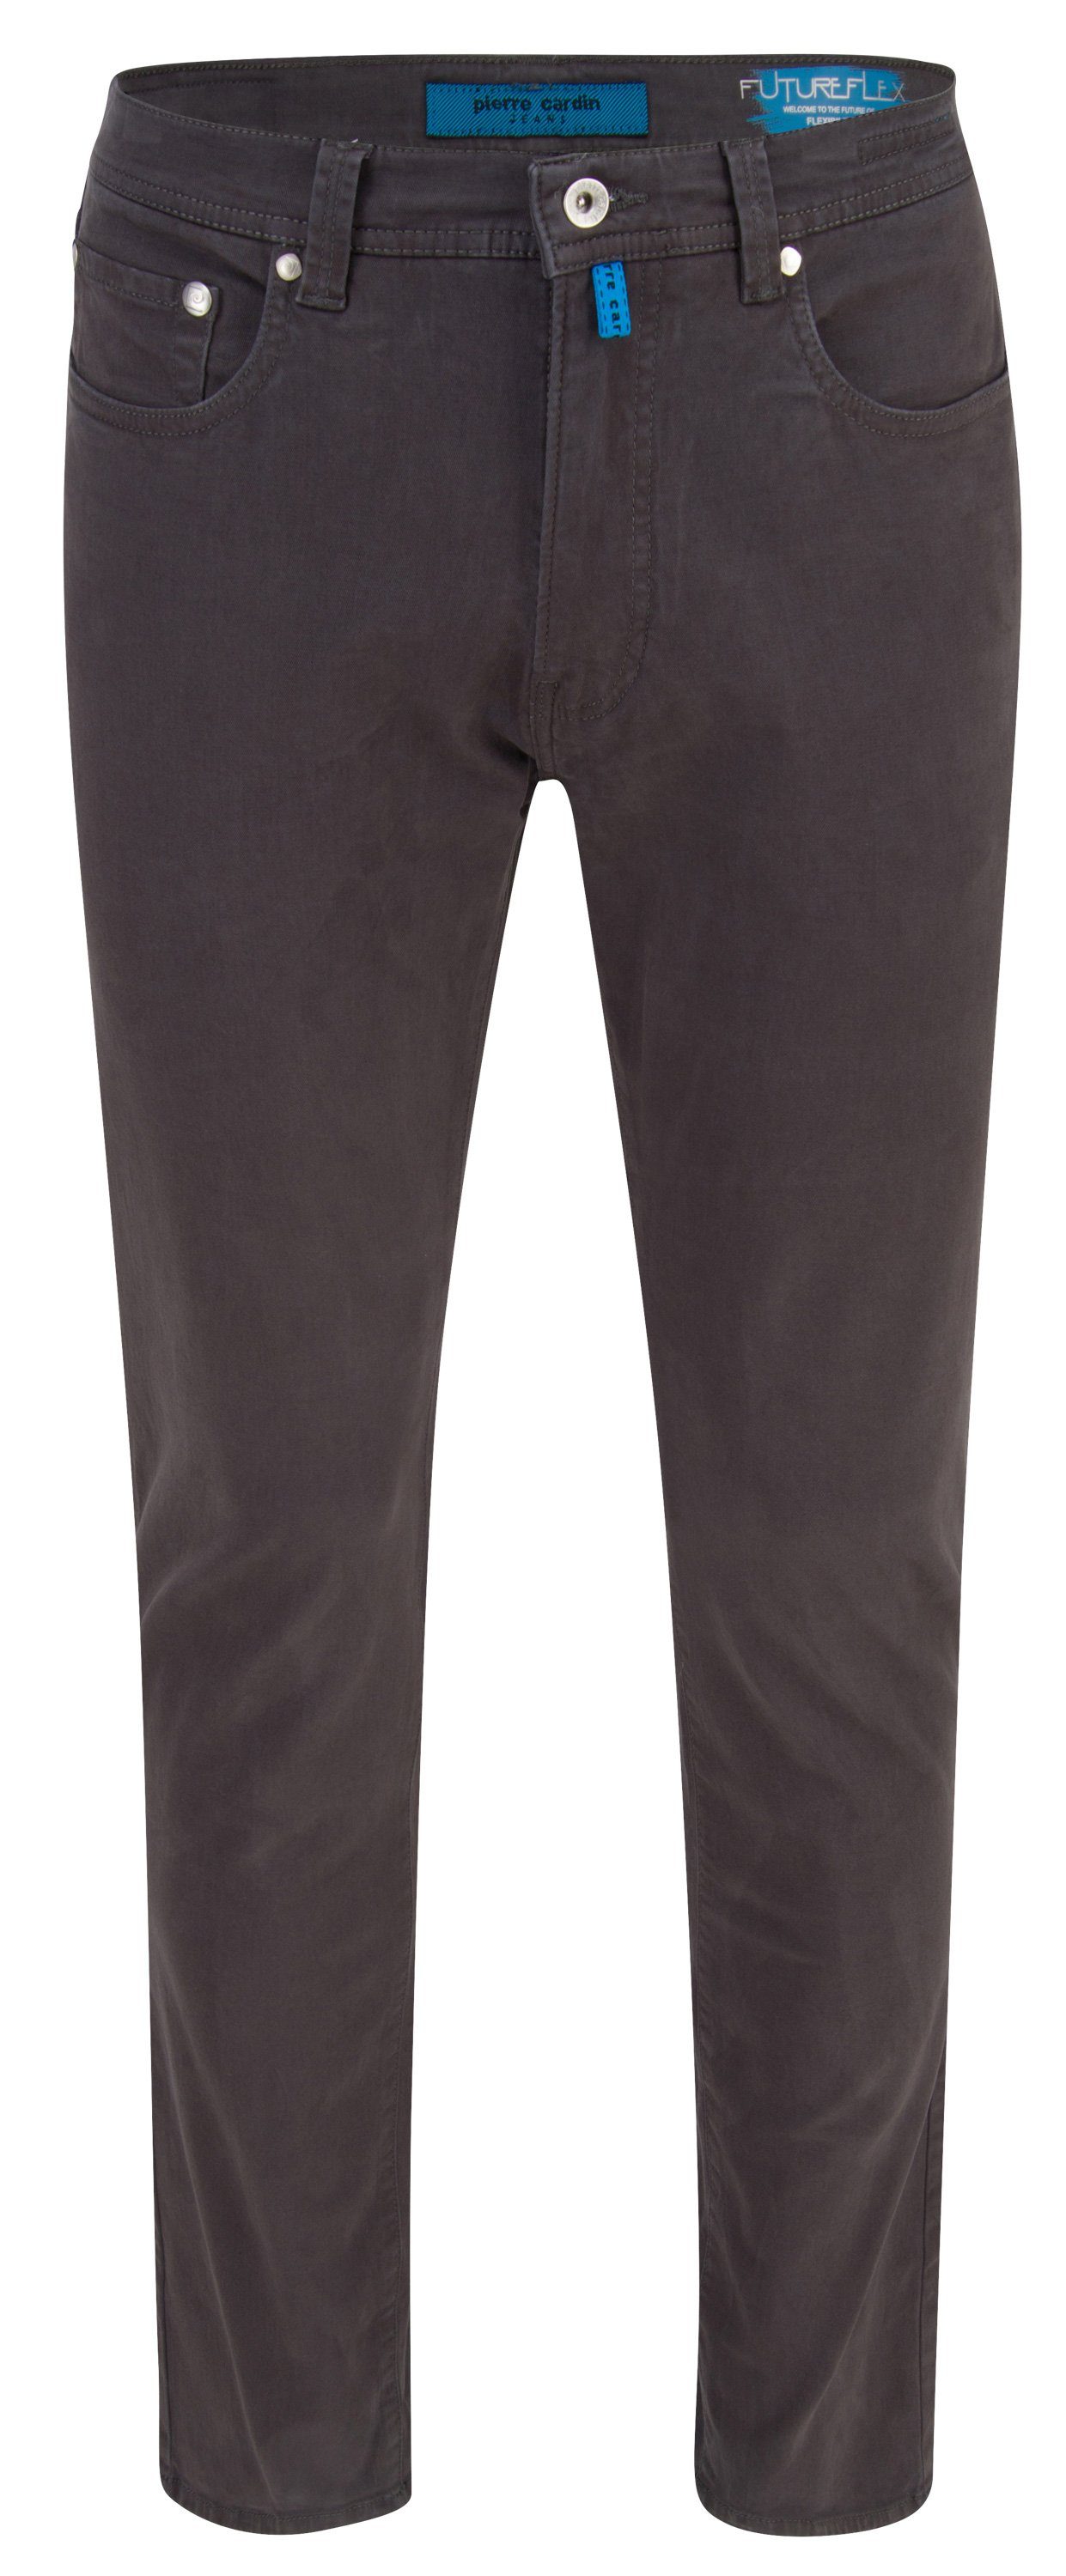 Herren Jeans Pierre Cardin 5-Pocket-Jeans PIERRE CARDIN FUTUREFLEX LYON grey 3451 2233.85